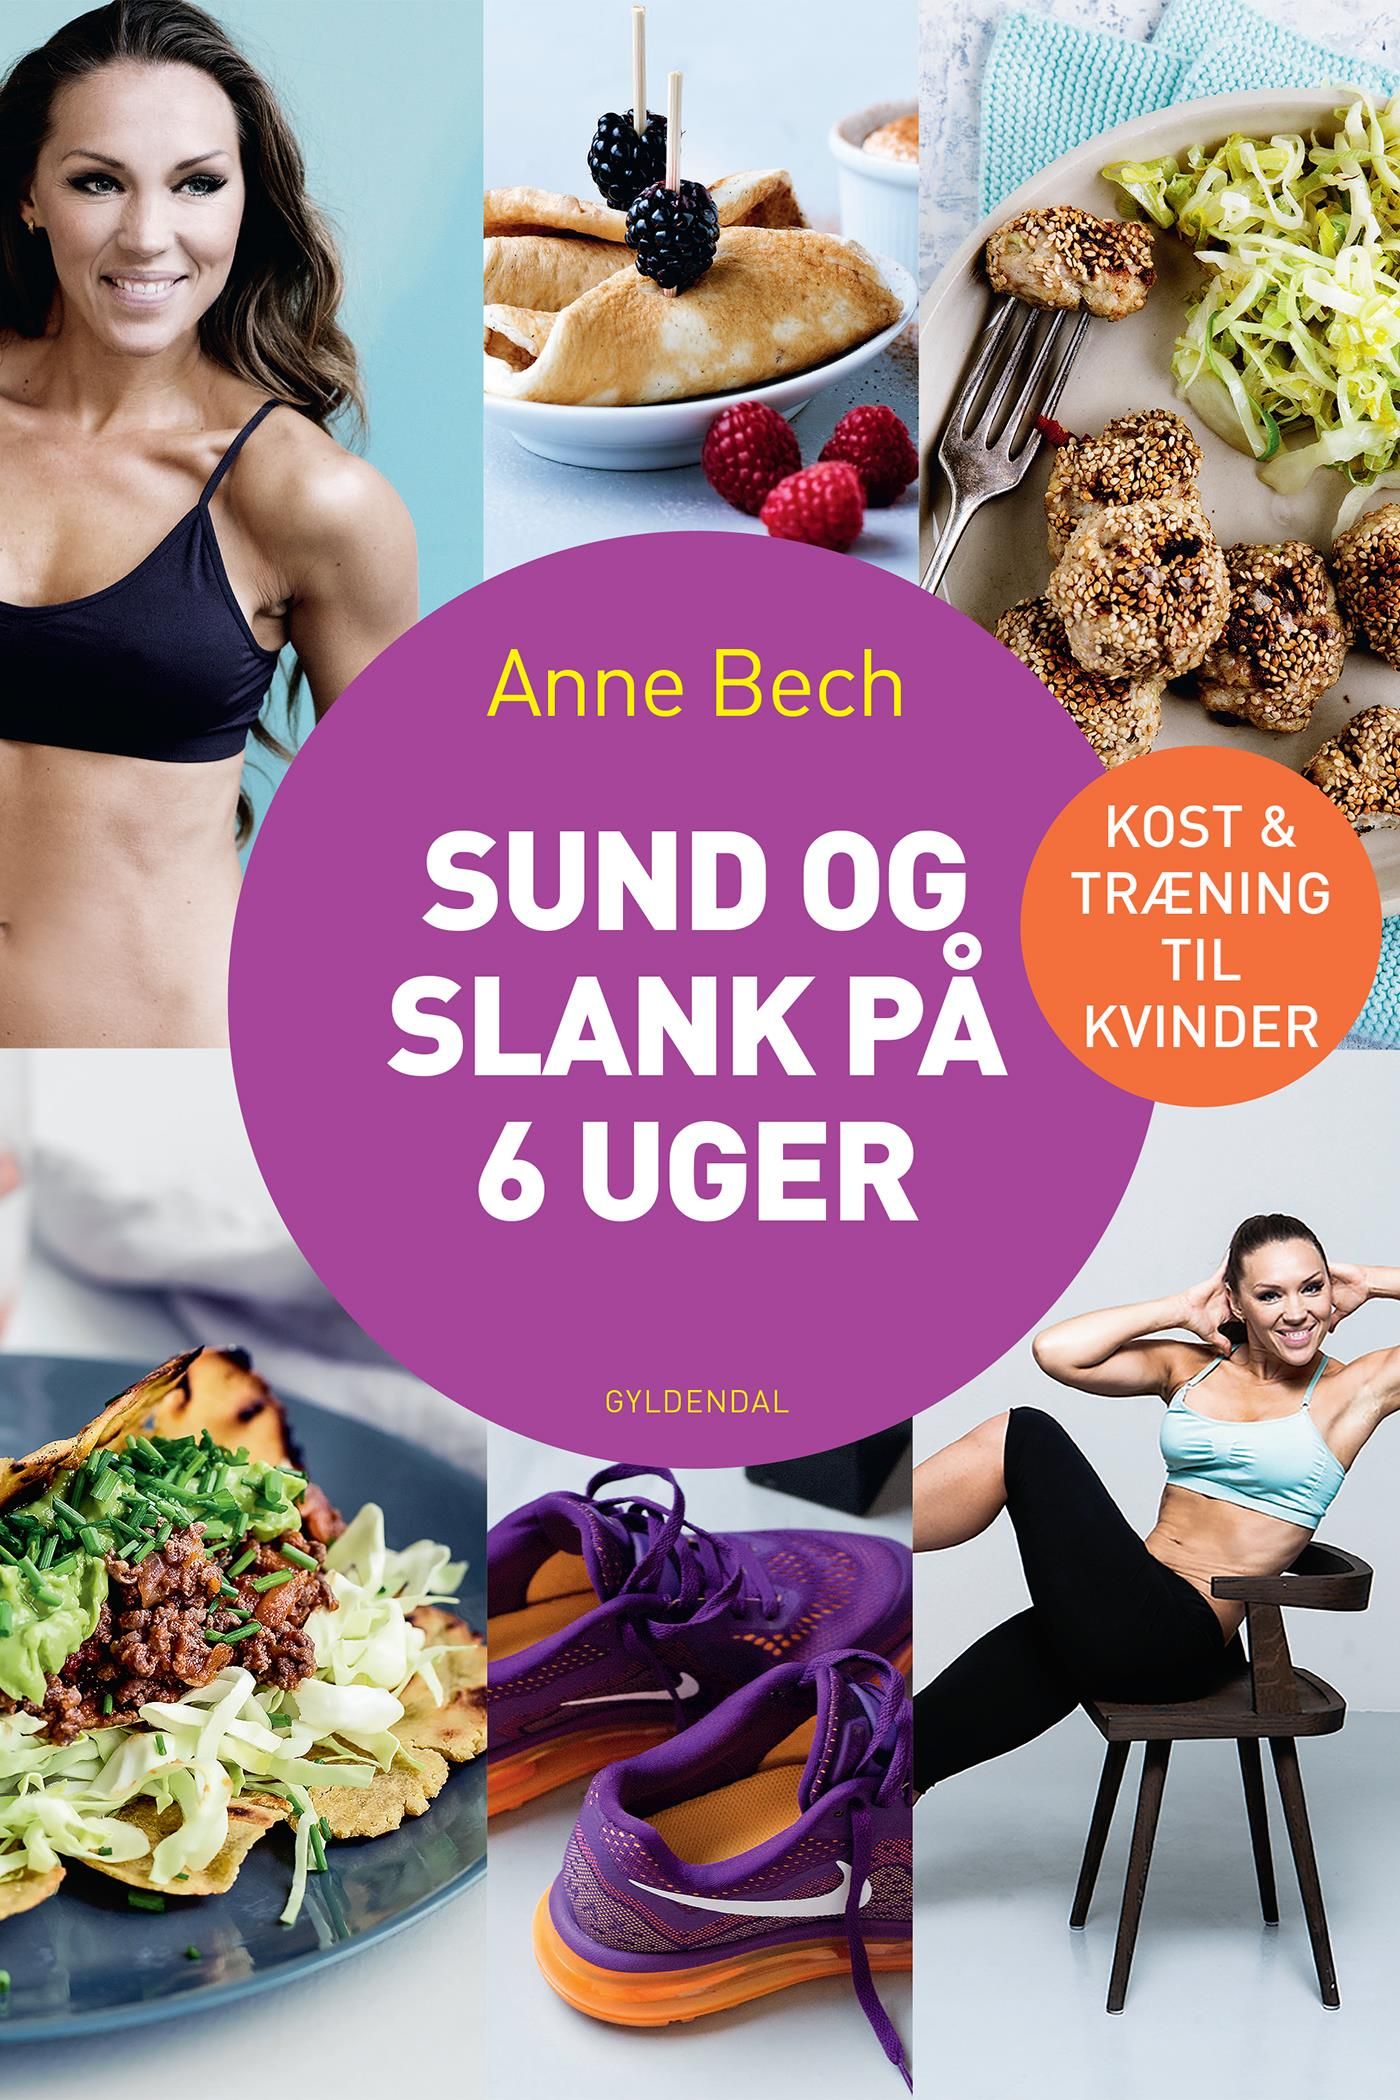 Sund og slank på 6 uger, eBook by Anne Bech